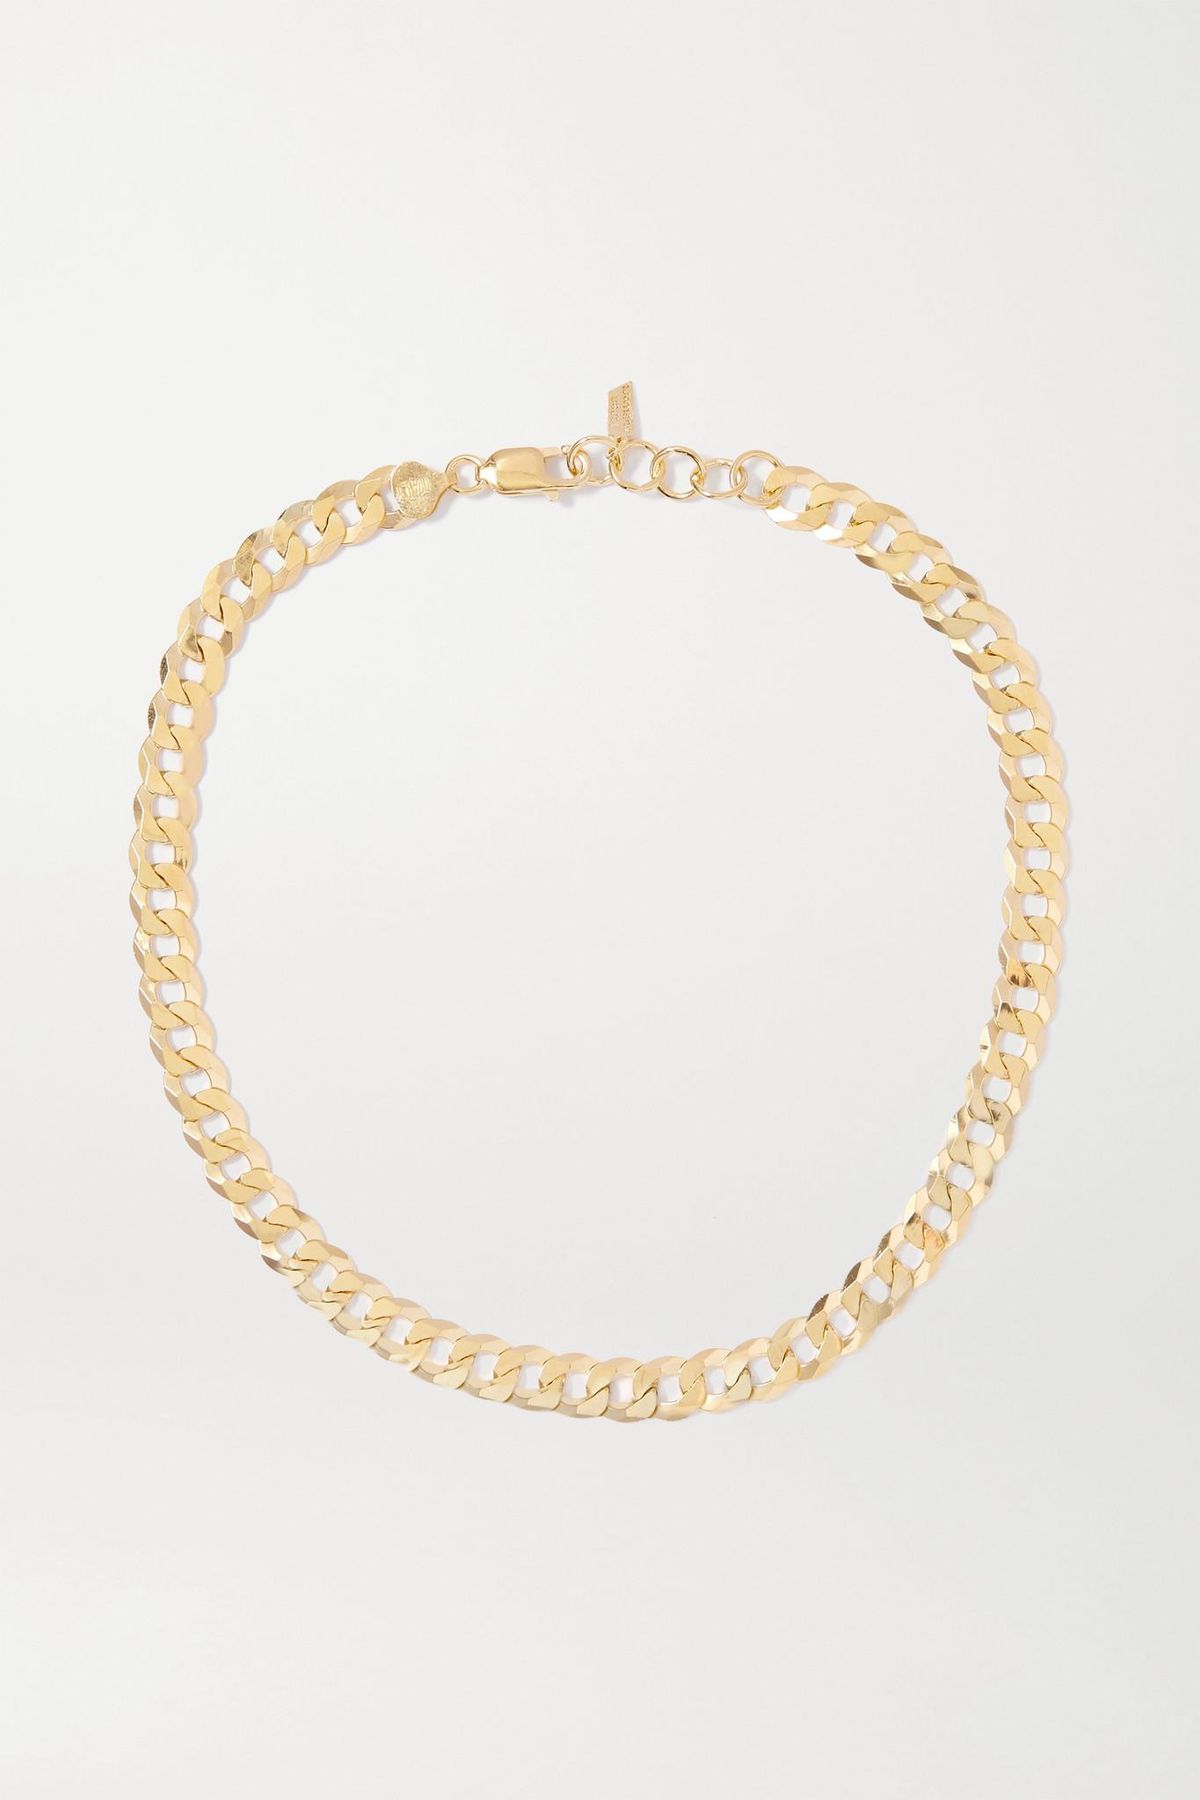 loren stewart and net sustain gold vermeil necklace